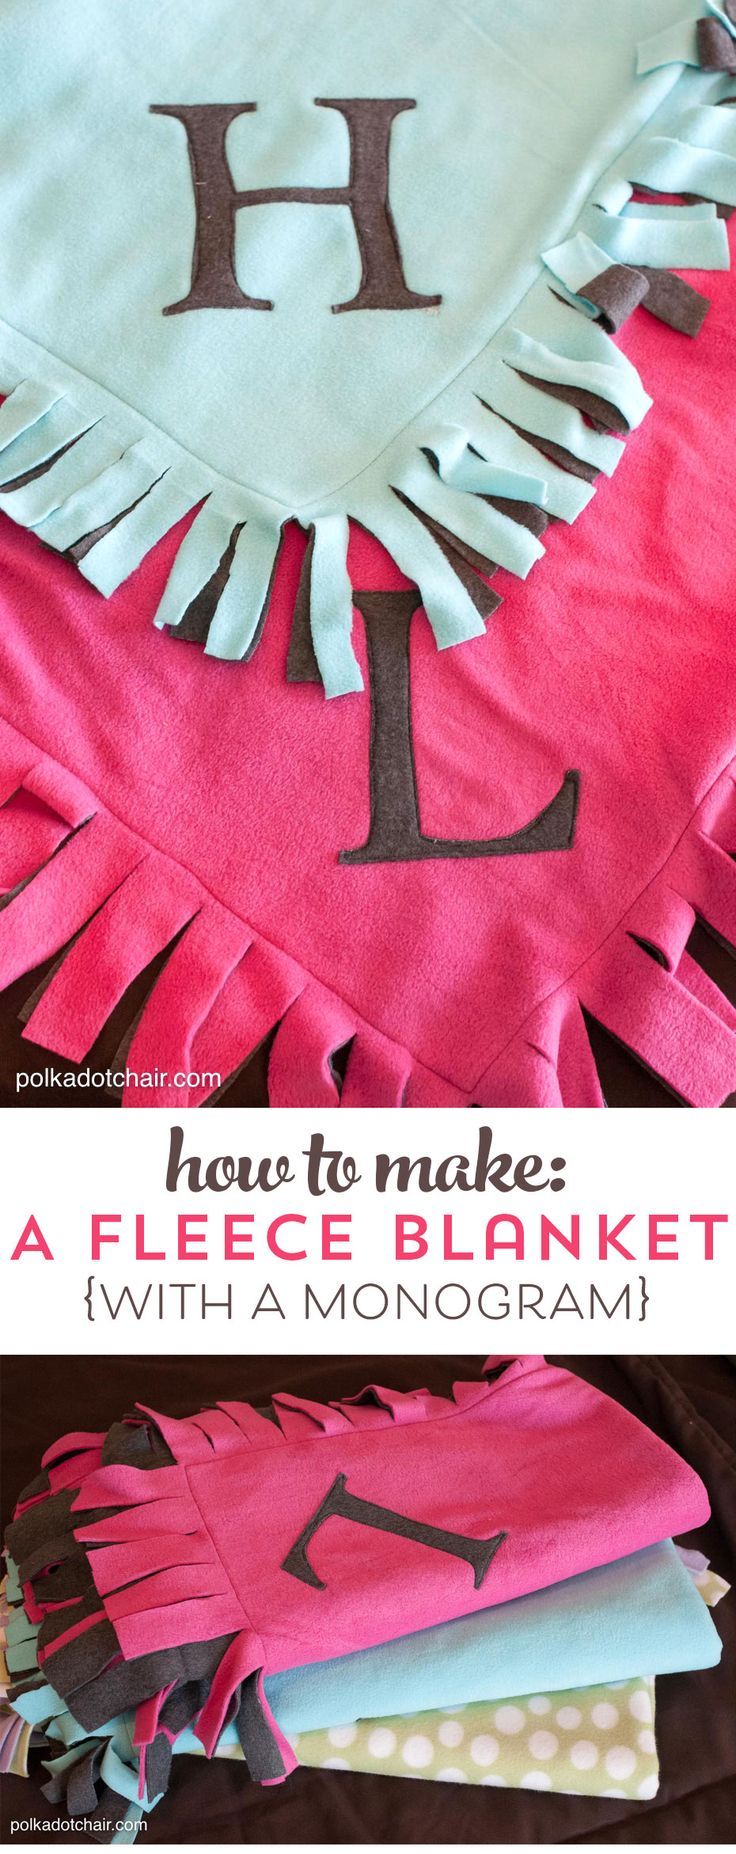 no sew fleece blanket instructions